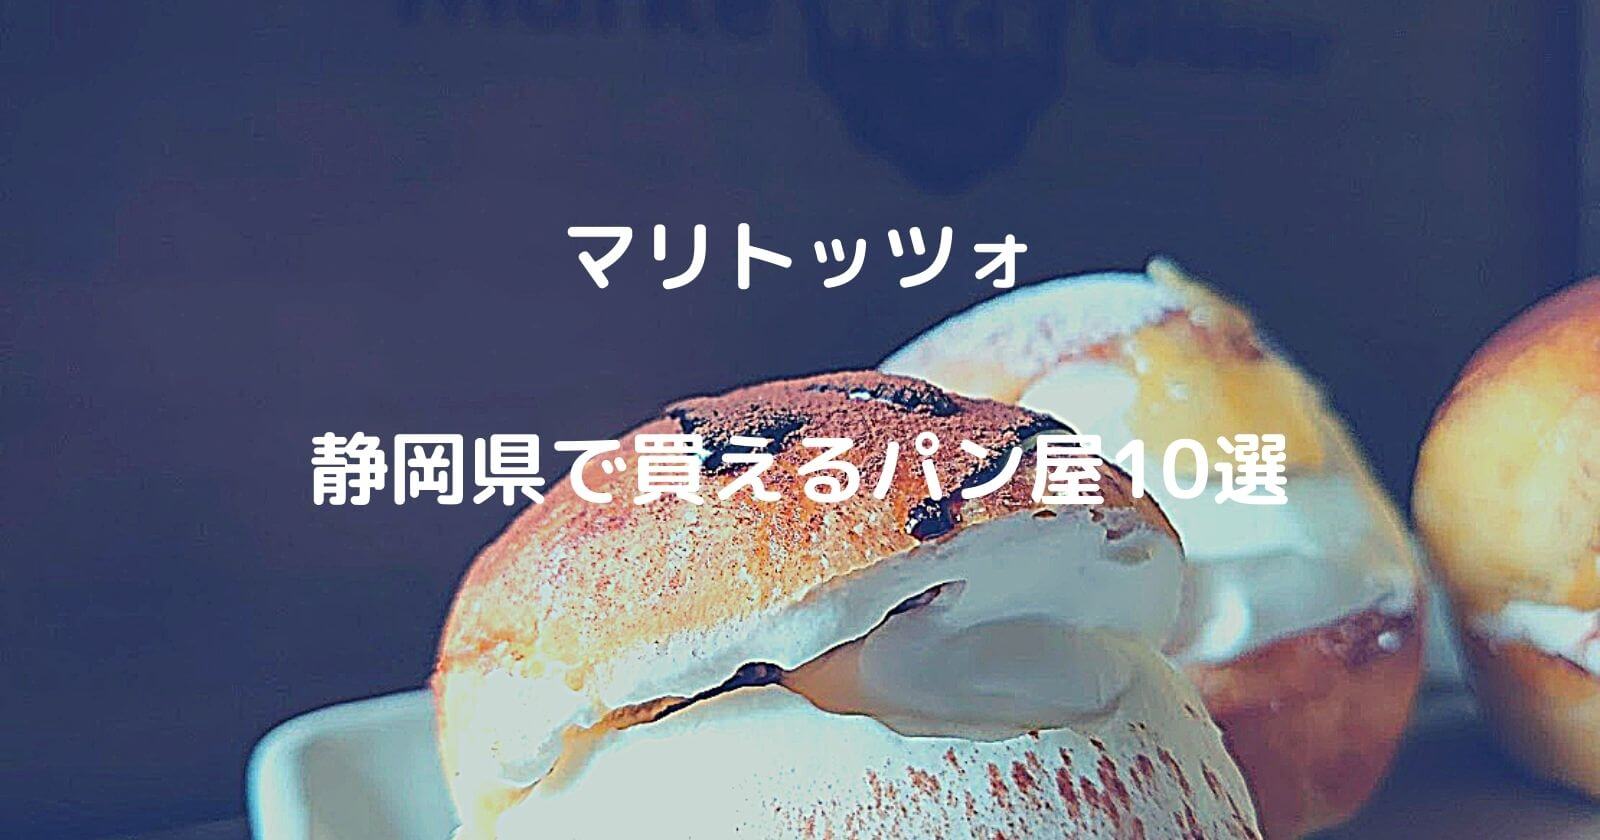 静岡県でマリトッツォが買えるパン屋10選